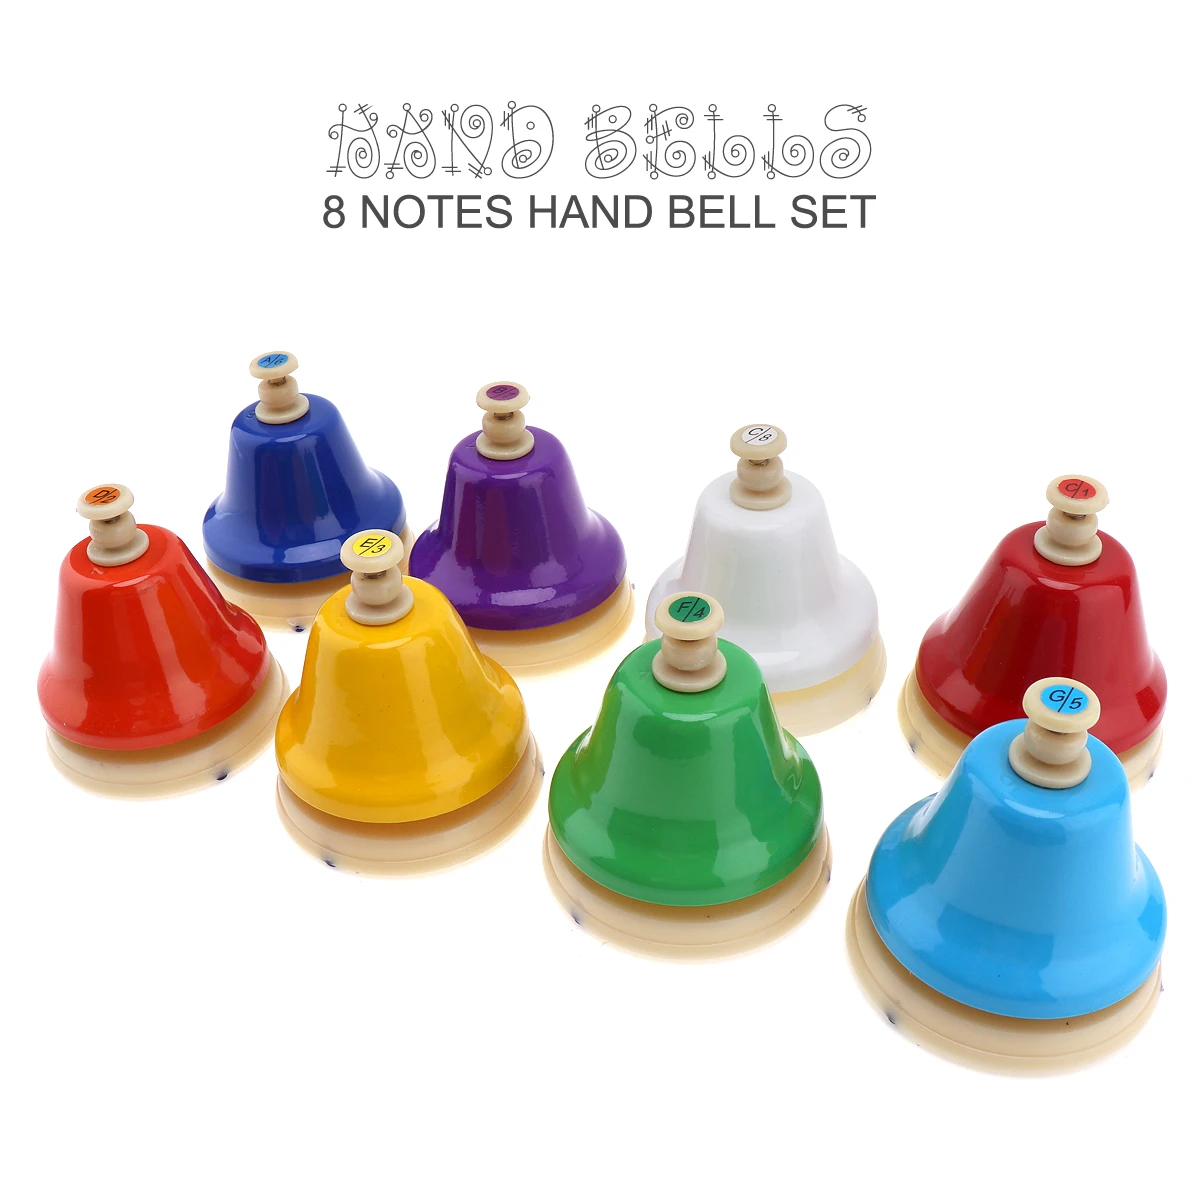 Tanio 8 uwaga kolorowy dzwonek ręczny zestaw Instrument muzyczny dla